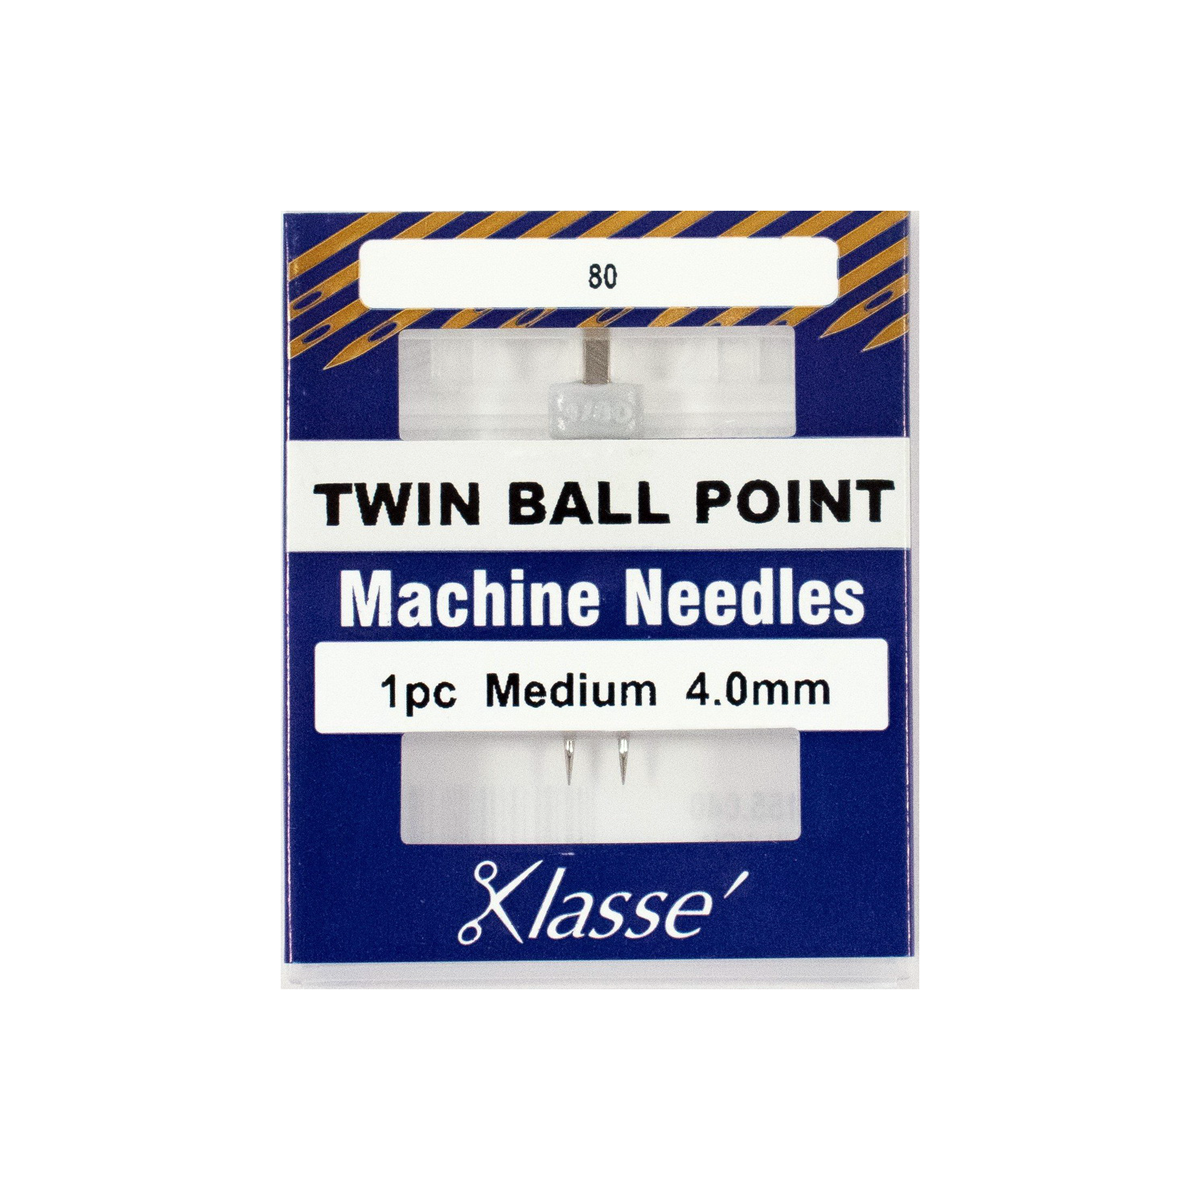 Klasse' Triple Needle Size 3.0mm 